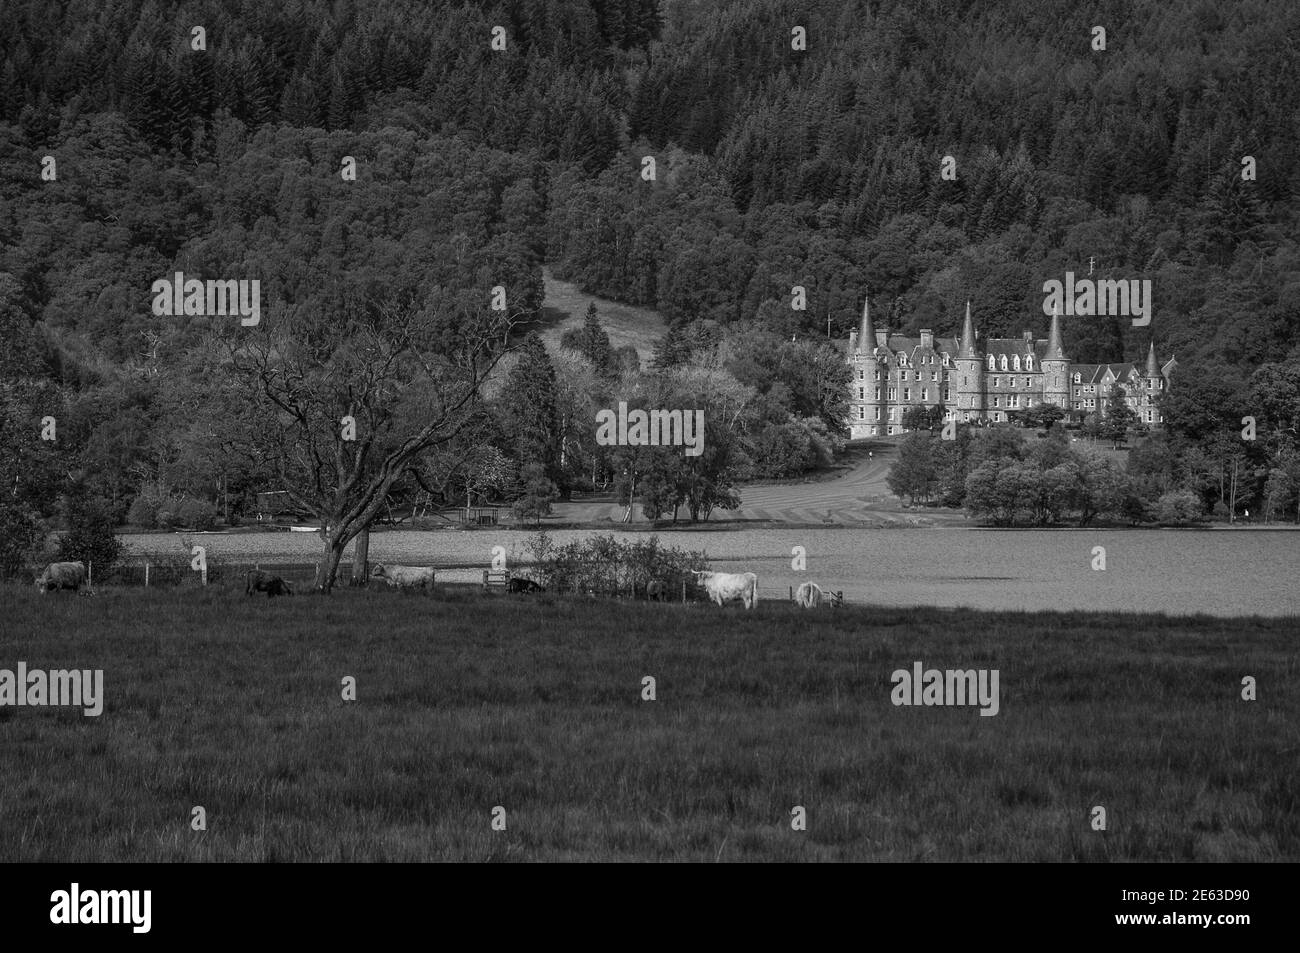 Schwarz-Weiß-Effekt von grasenden Kühen vor Loch Achray, Schottland. Konzept: Reise nach Schottland, typische Landschaften Schottlands Stockfoto